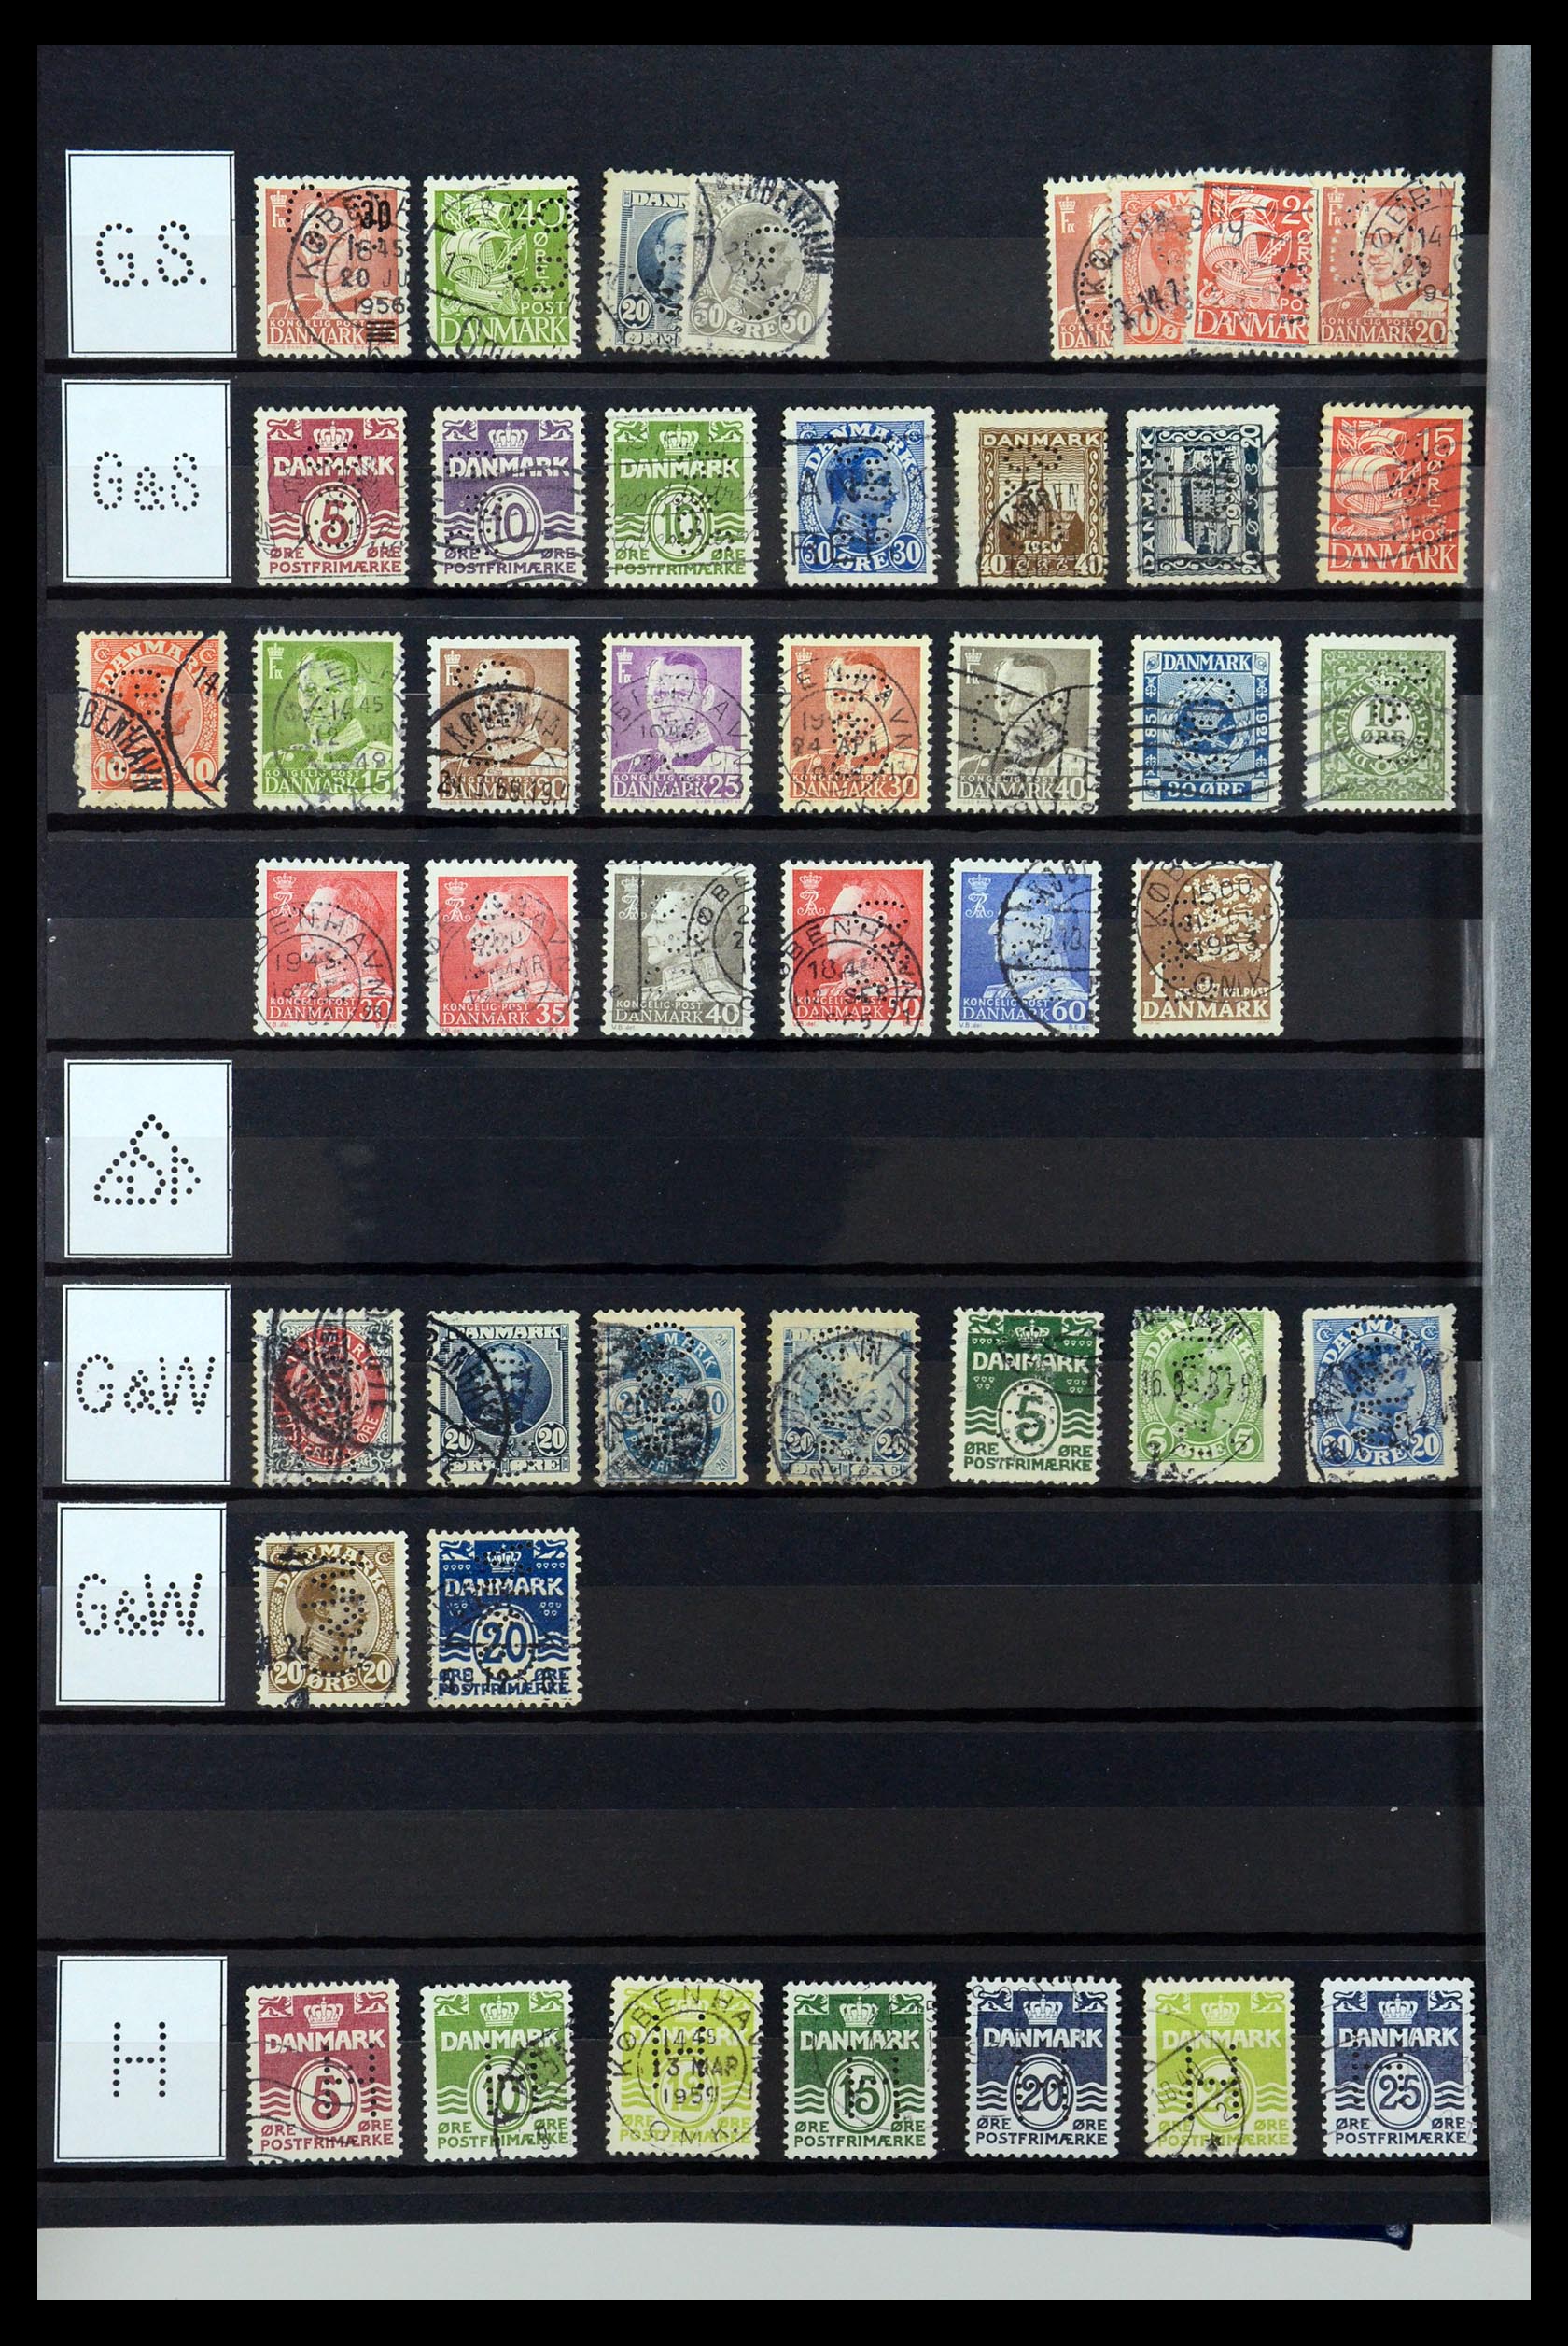 36396 121 - Postzegelverzameling 36396 Denemarken perfins.